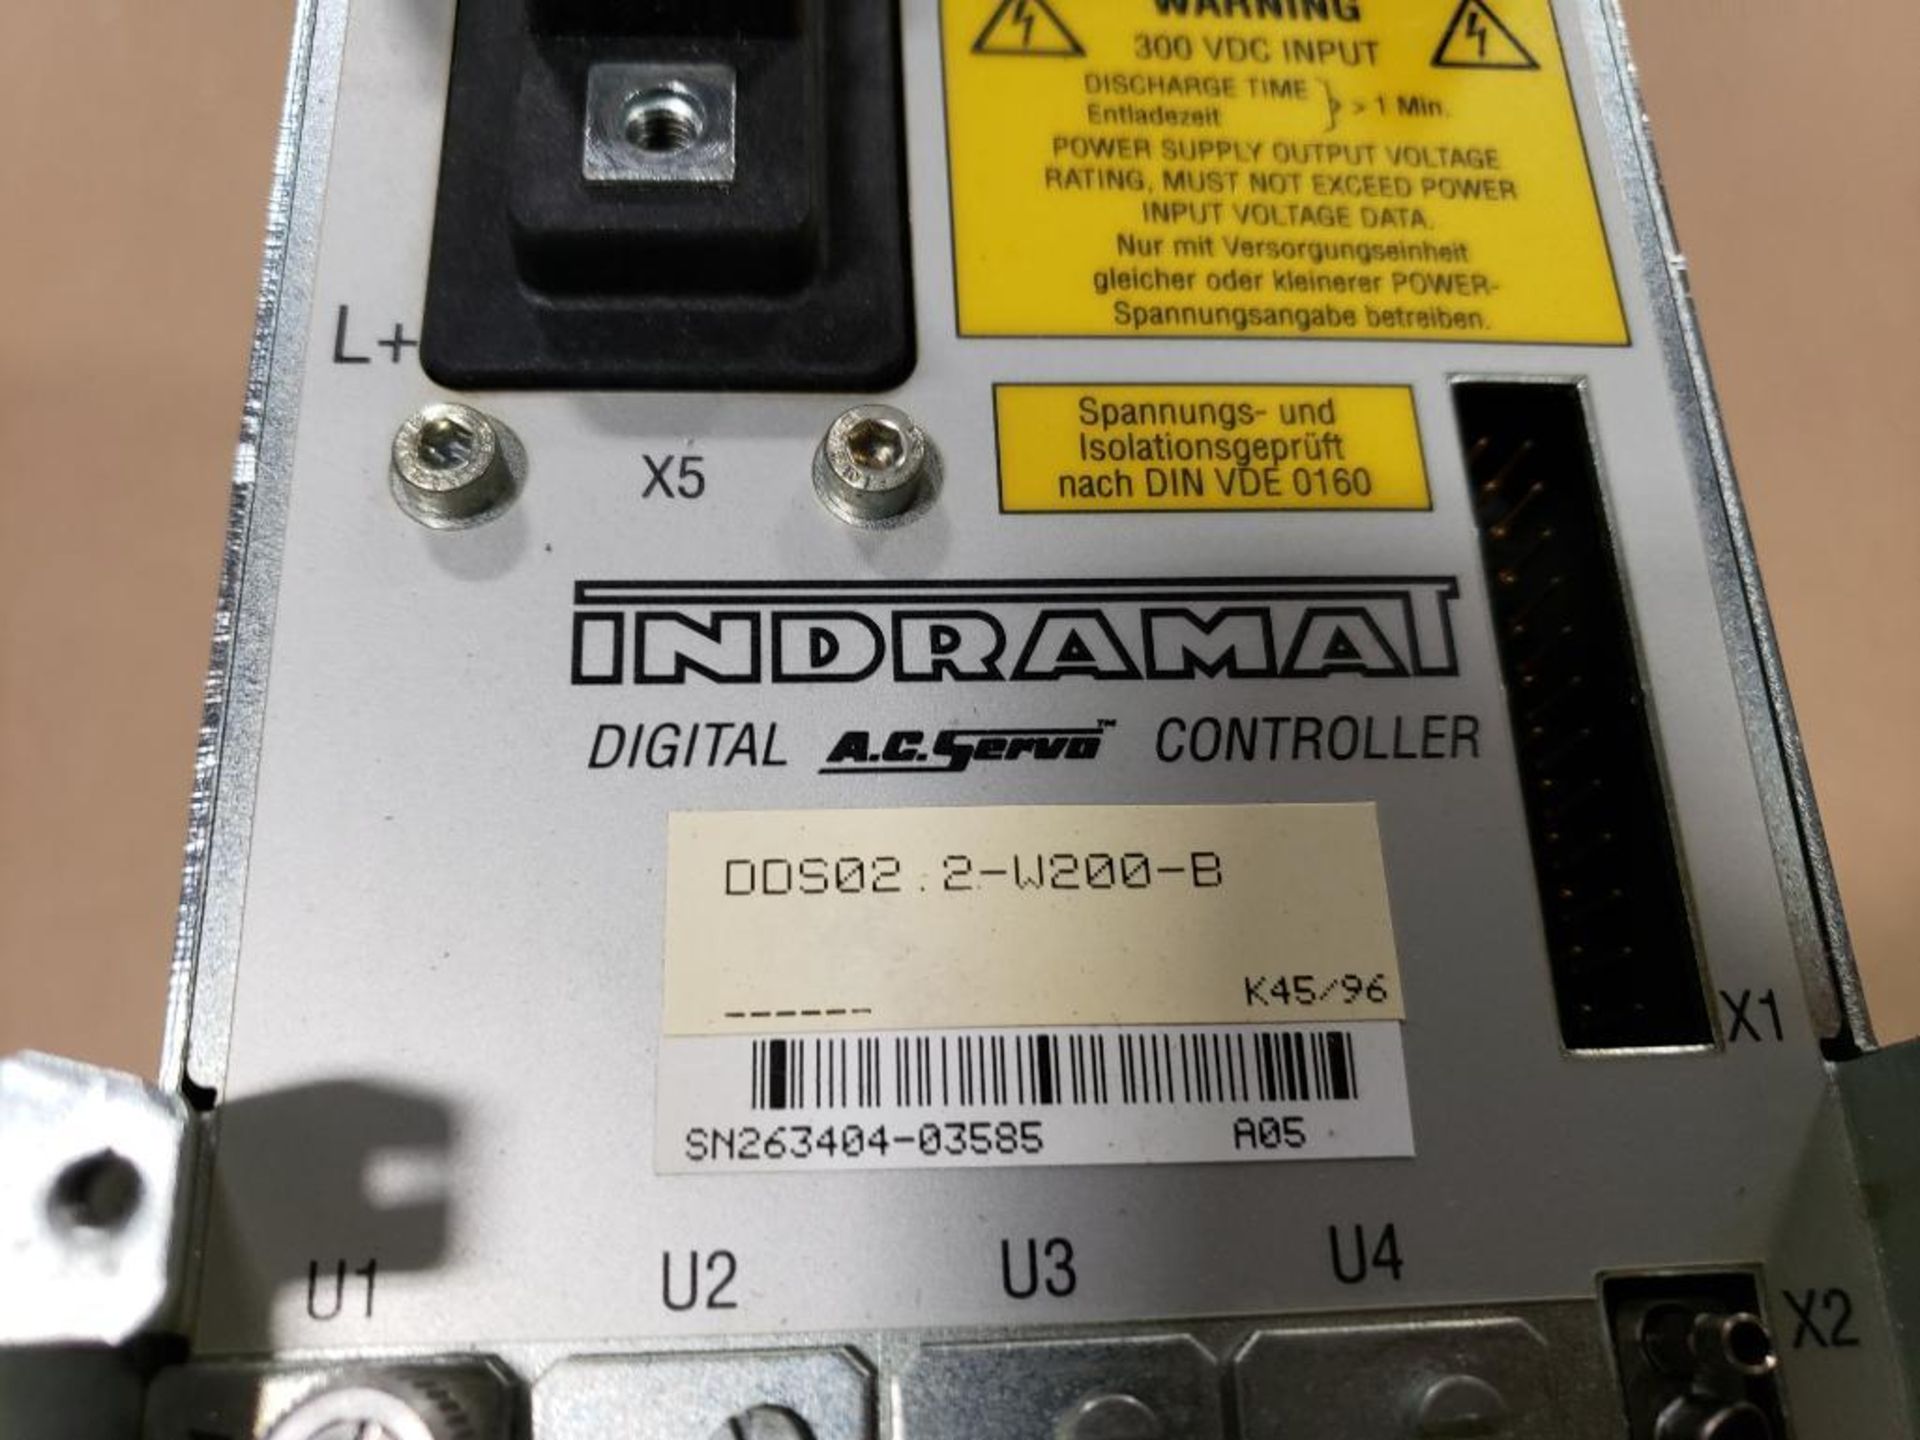 Indramat DDS02.2-W200-B digital AC servo controller. W/ FWC-DSM2.3-ELS-03V34-MS firmware module. - Image 3 of 6